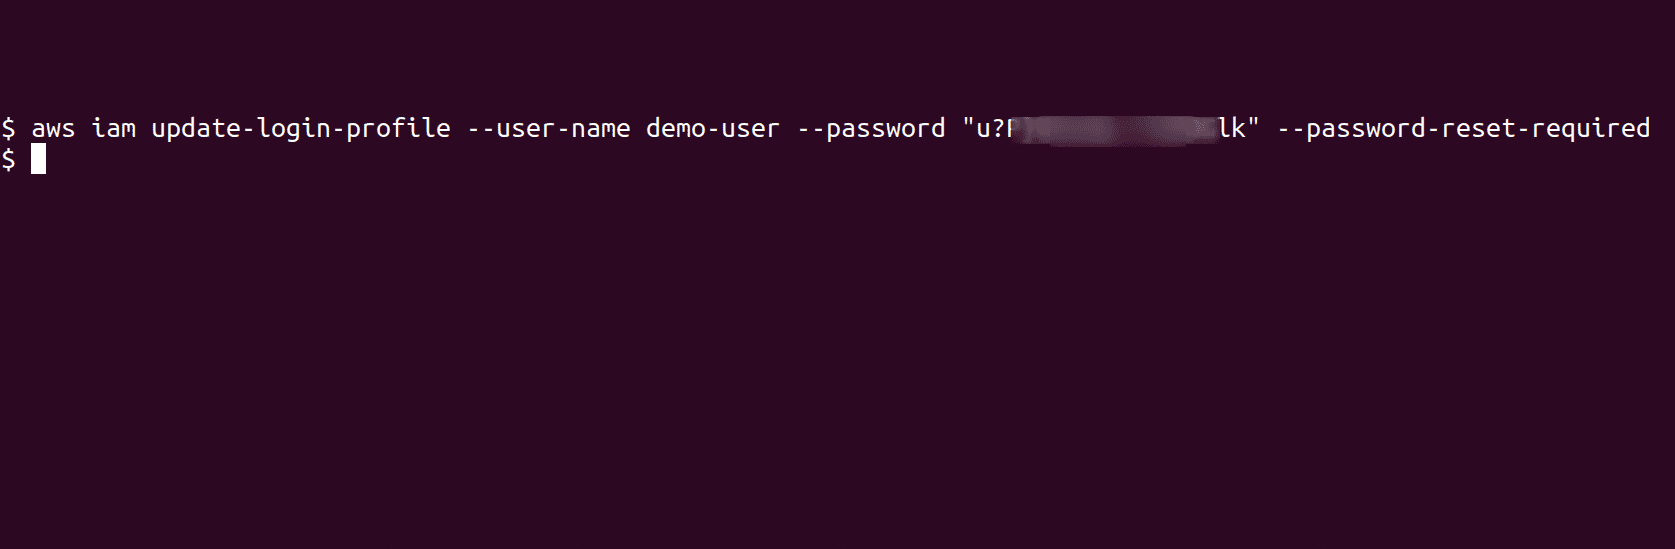 Update User Password